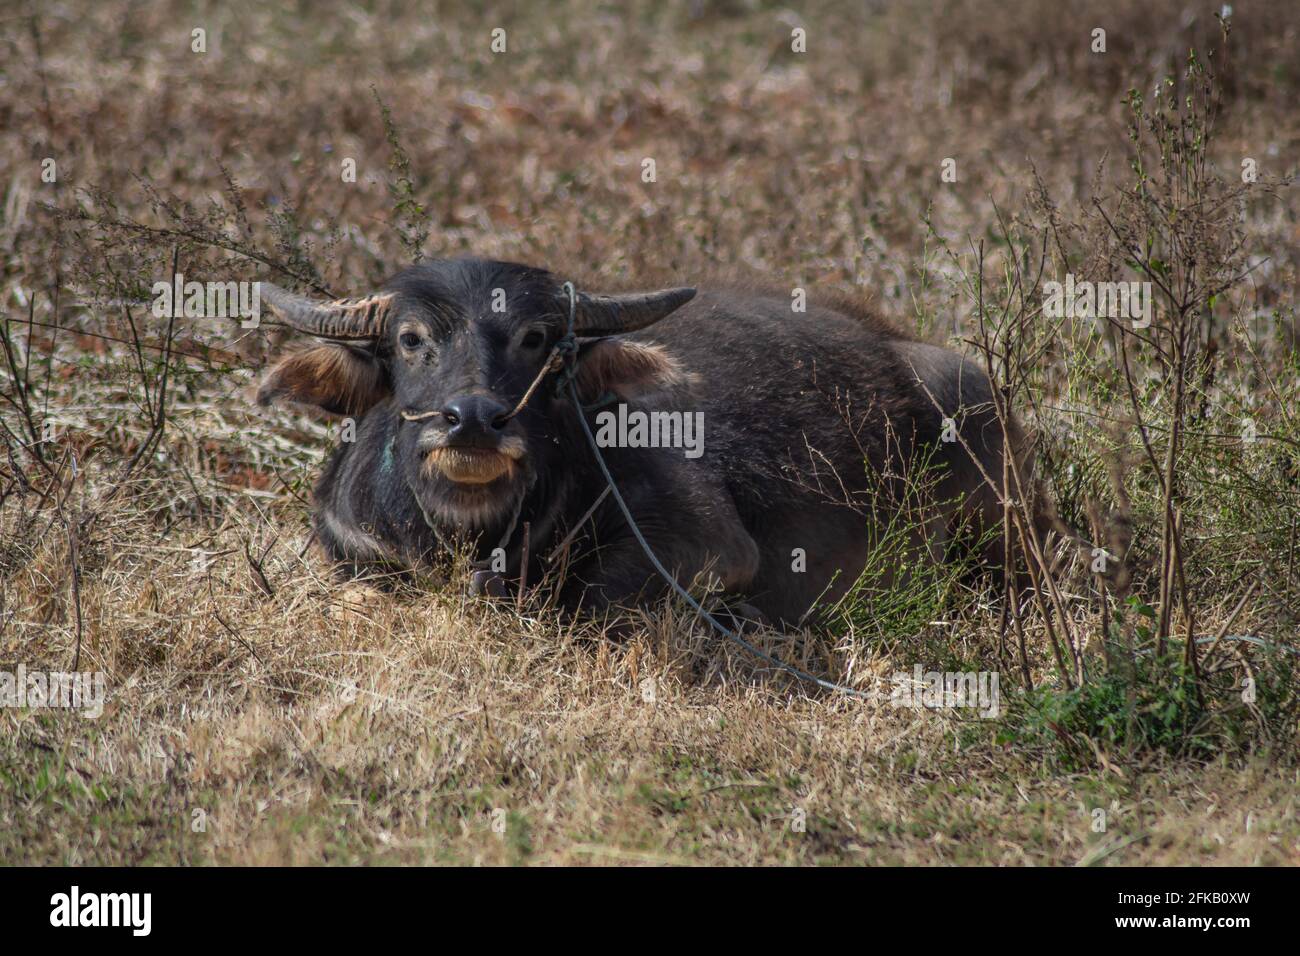 Un grande bufalo birmano con corna si trova nell'erba secca su un terreno agricolo da qualche parte tra Kalaw e Inle Lake, Shan state, Myanmar Foto Stock